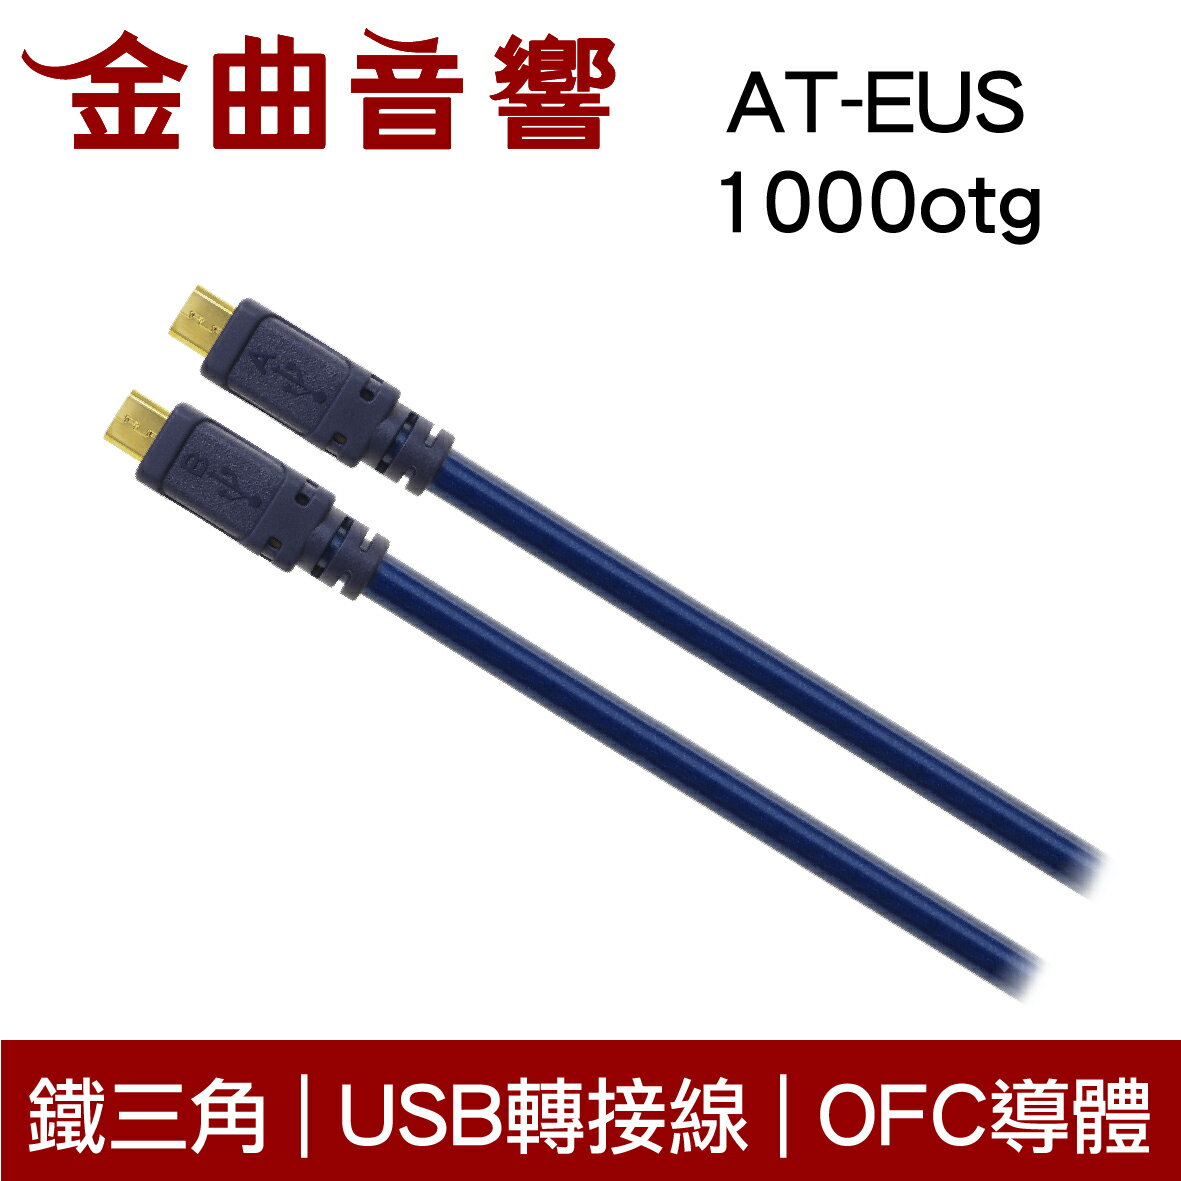 鐵三角 AT-EUS1000otg 0.7m OFC 鍍金接頭 USB 轉接線 | 金曲音響